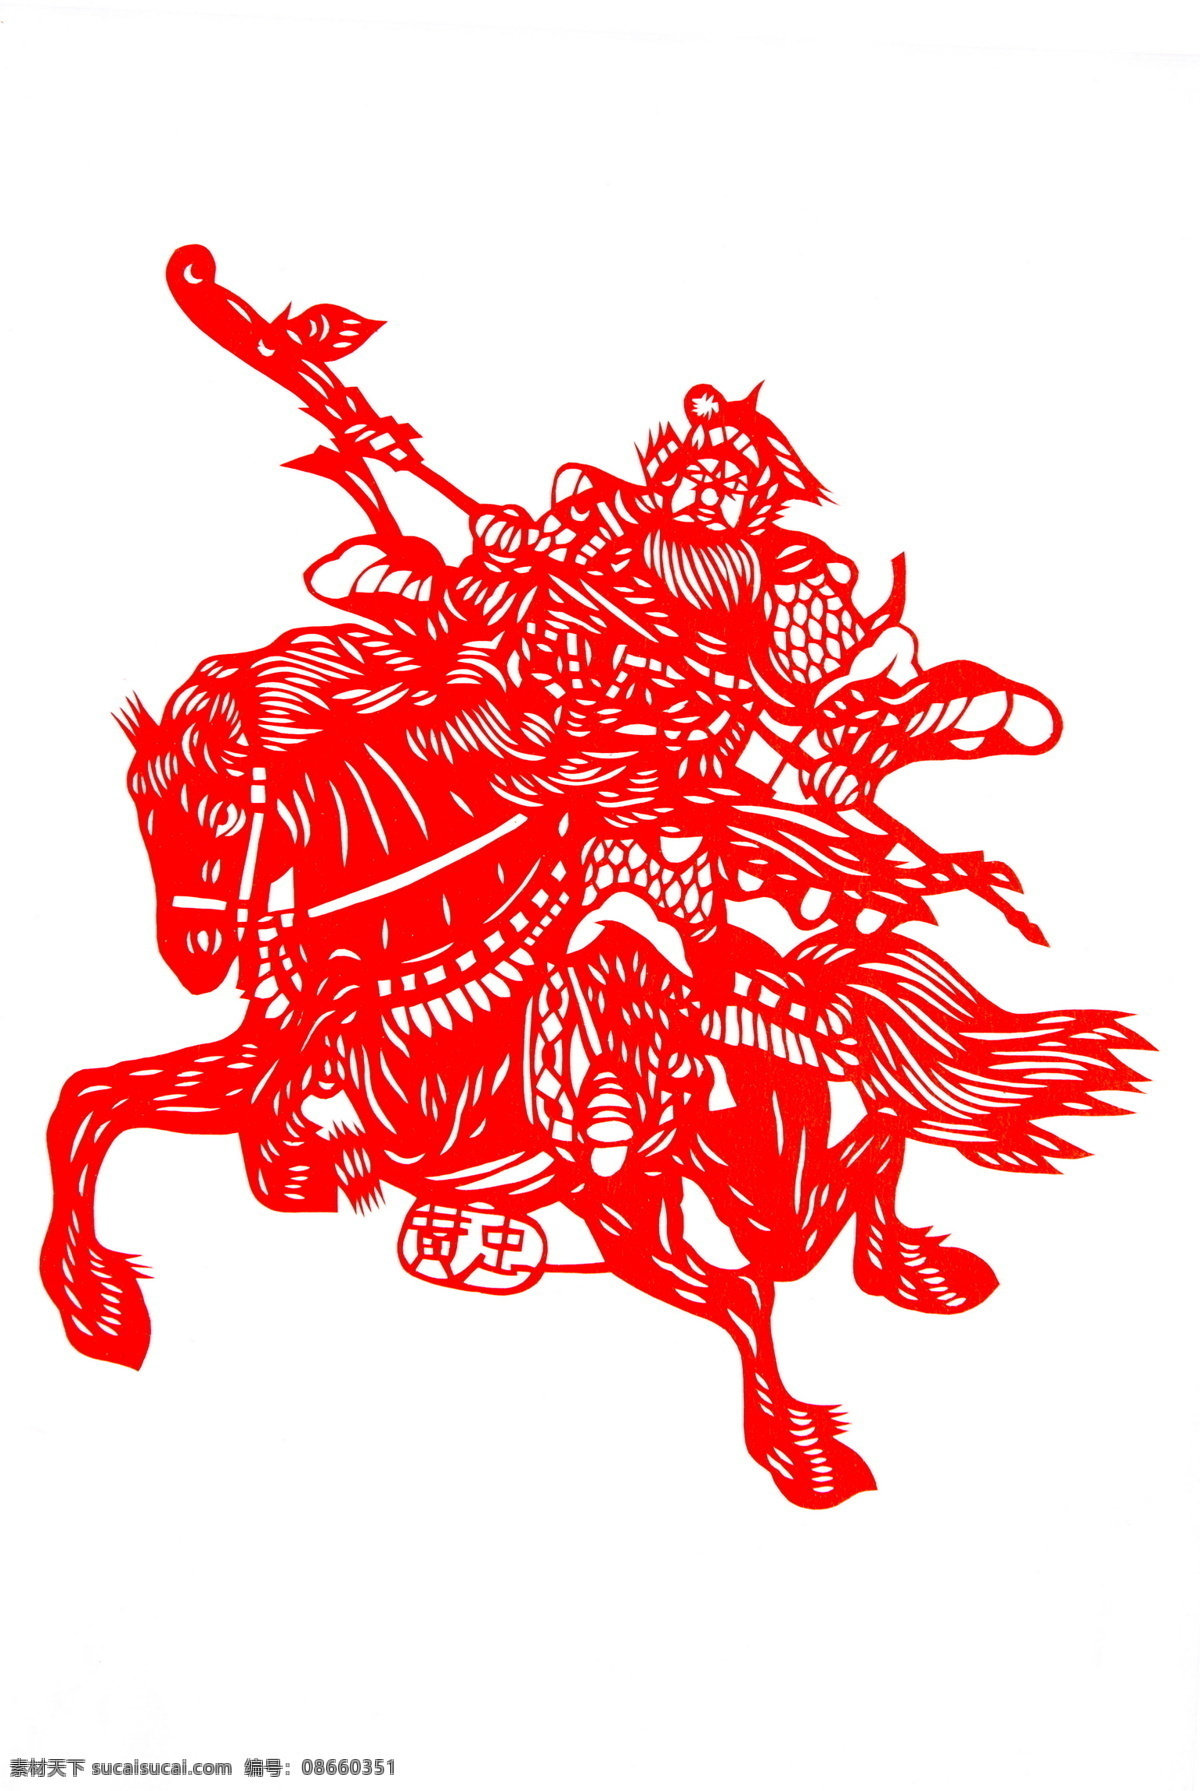 传统文化 红色 剪纸 剪纸马 剪 纸马 模板下载 设计素材 马年 三国 生肖 马 黄忠 文化艺术 节日素材 2015羊年